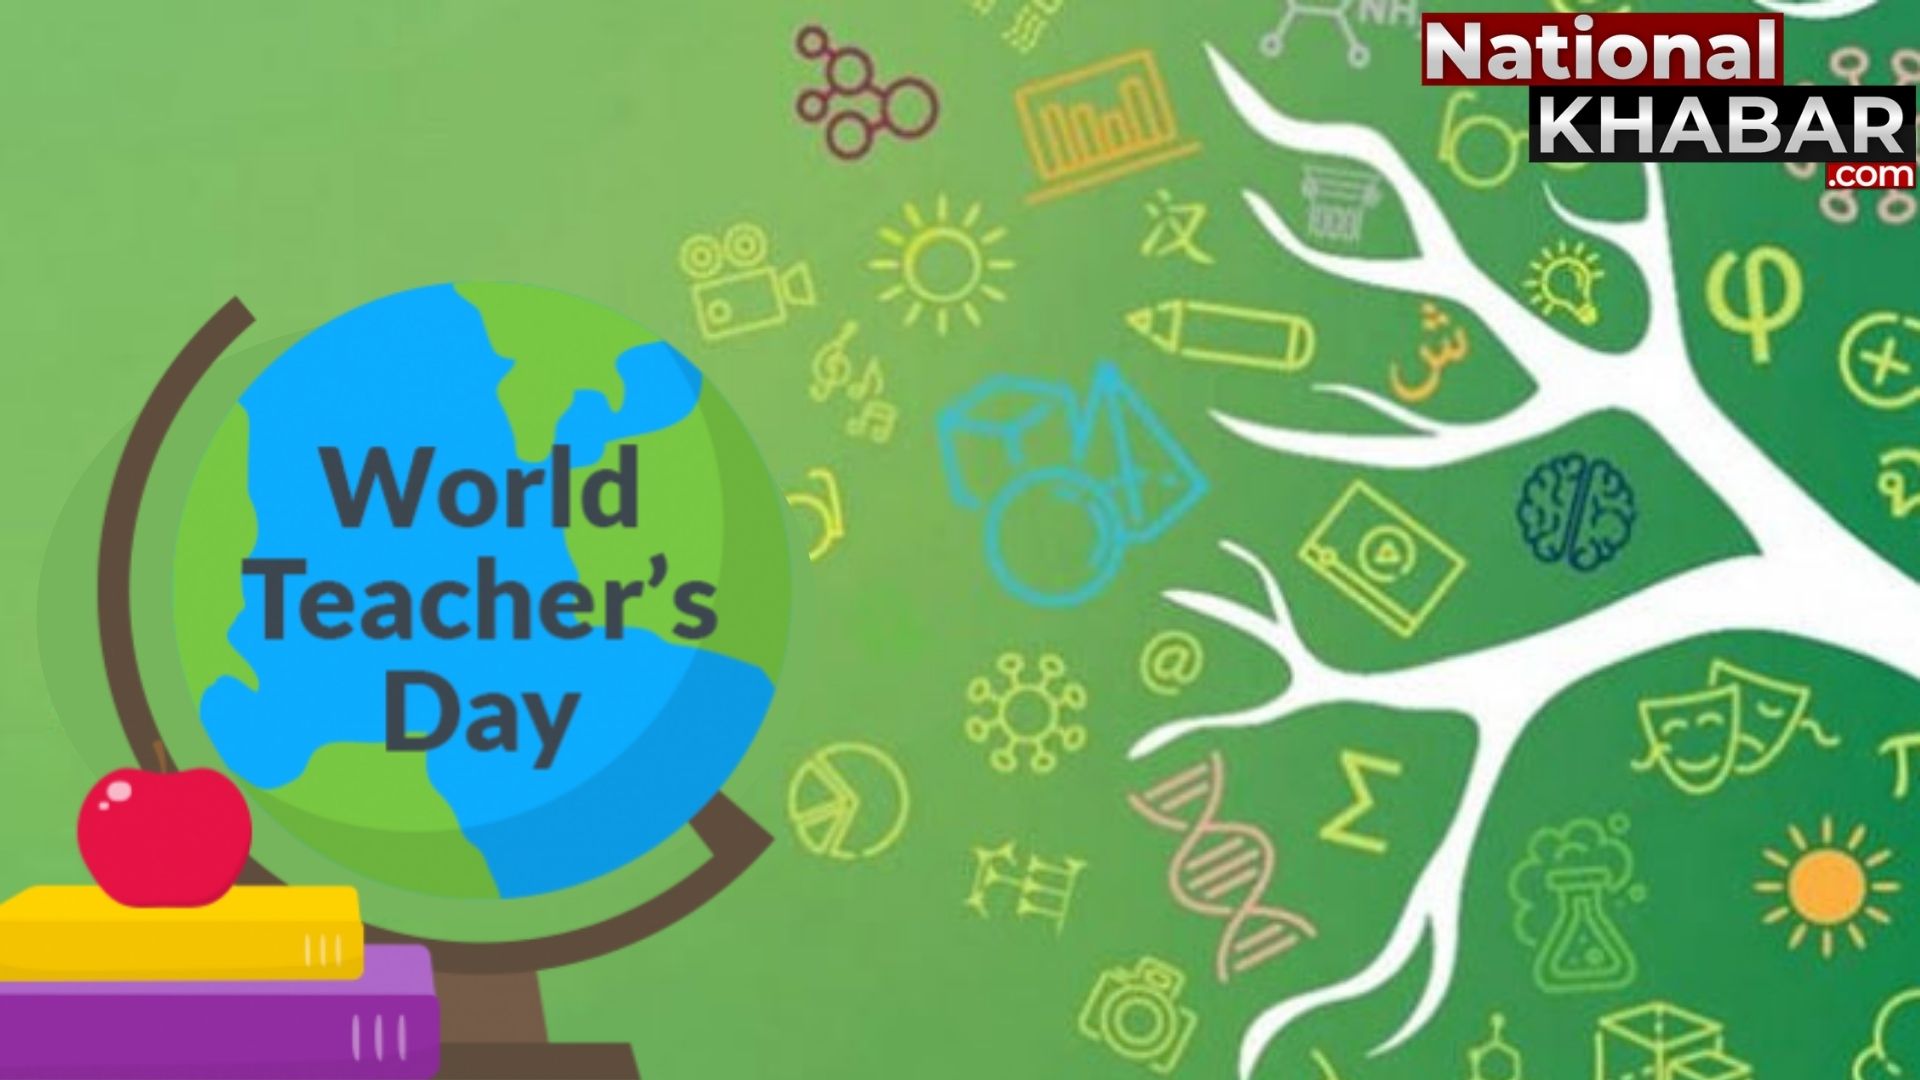 World Teachers Day: विश्व शिक्षक दिवस के महत्व, इतिहास, विषय के बारे में सबकुछ जानें